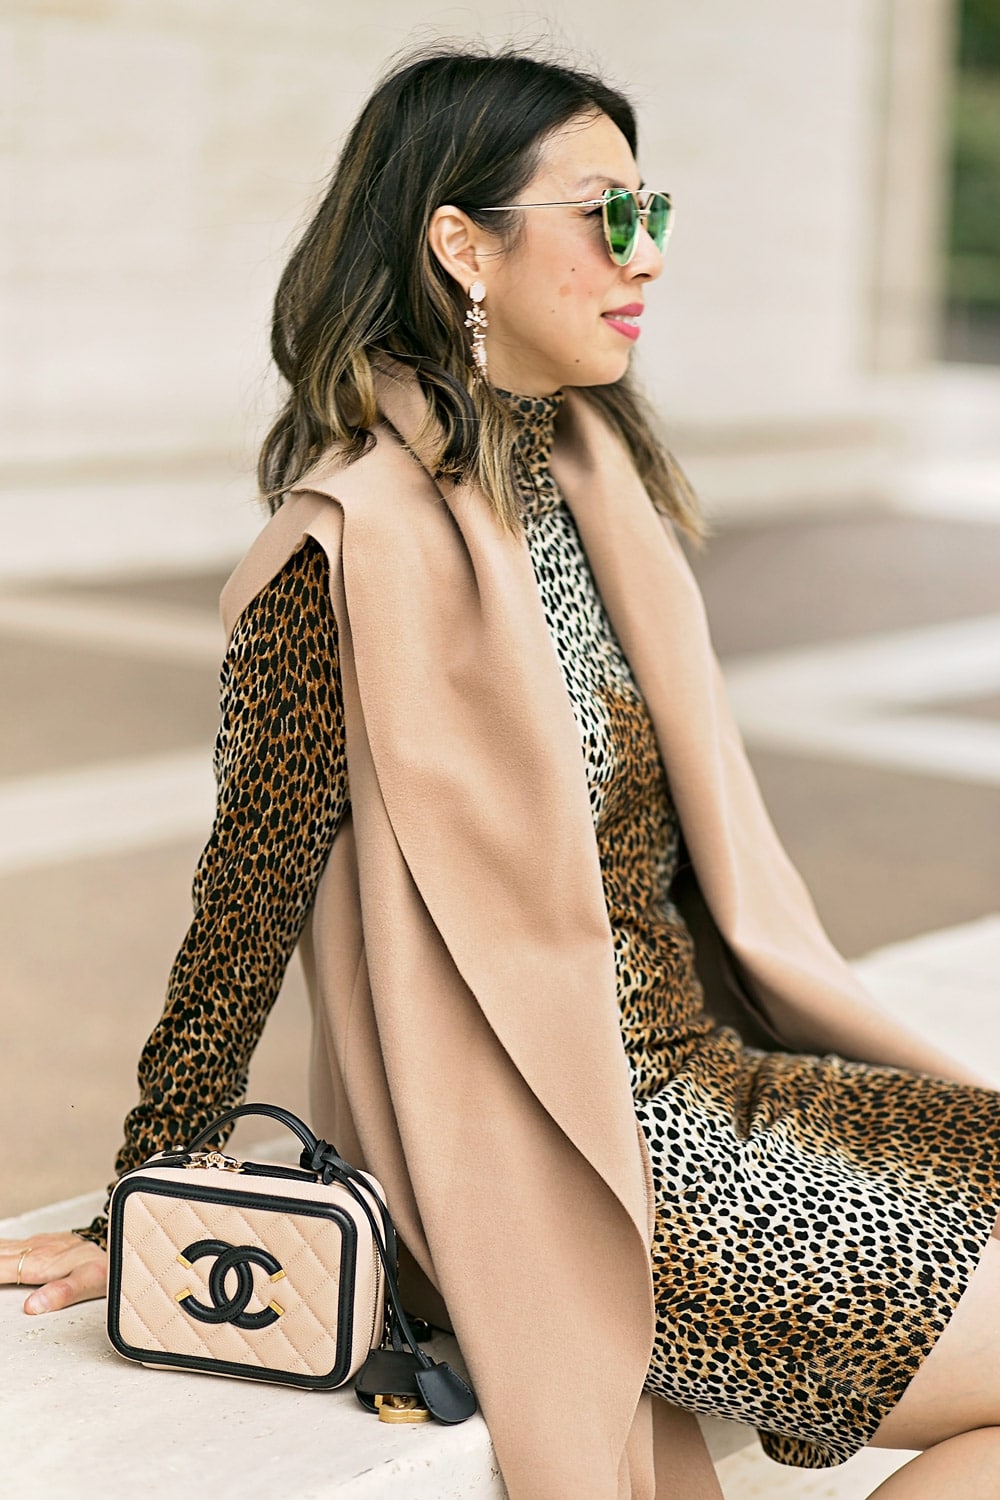 dolce and gabbana leopard print dress and camel vest, chanel filigree vanity bag